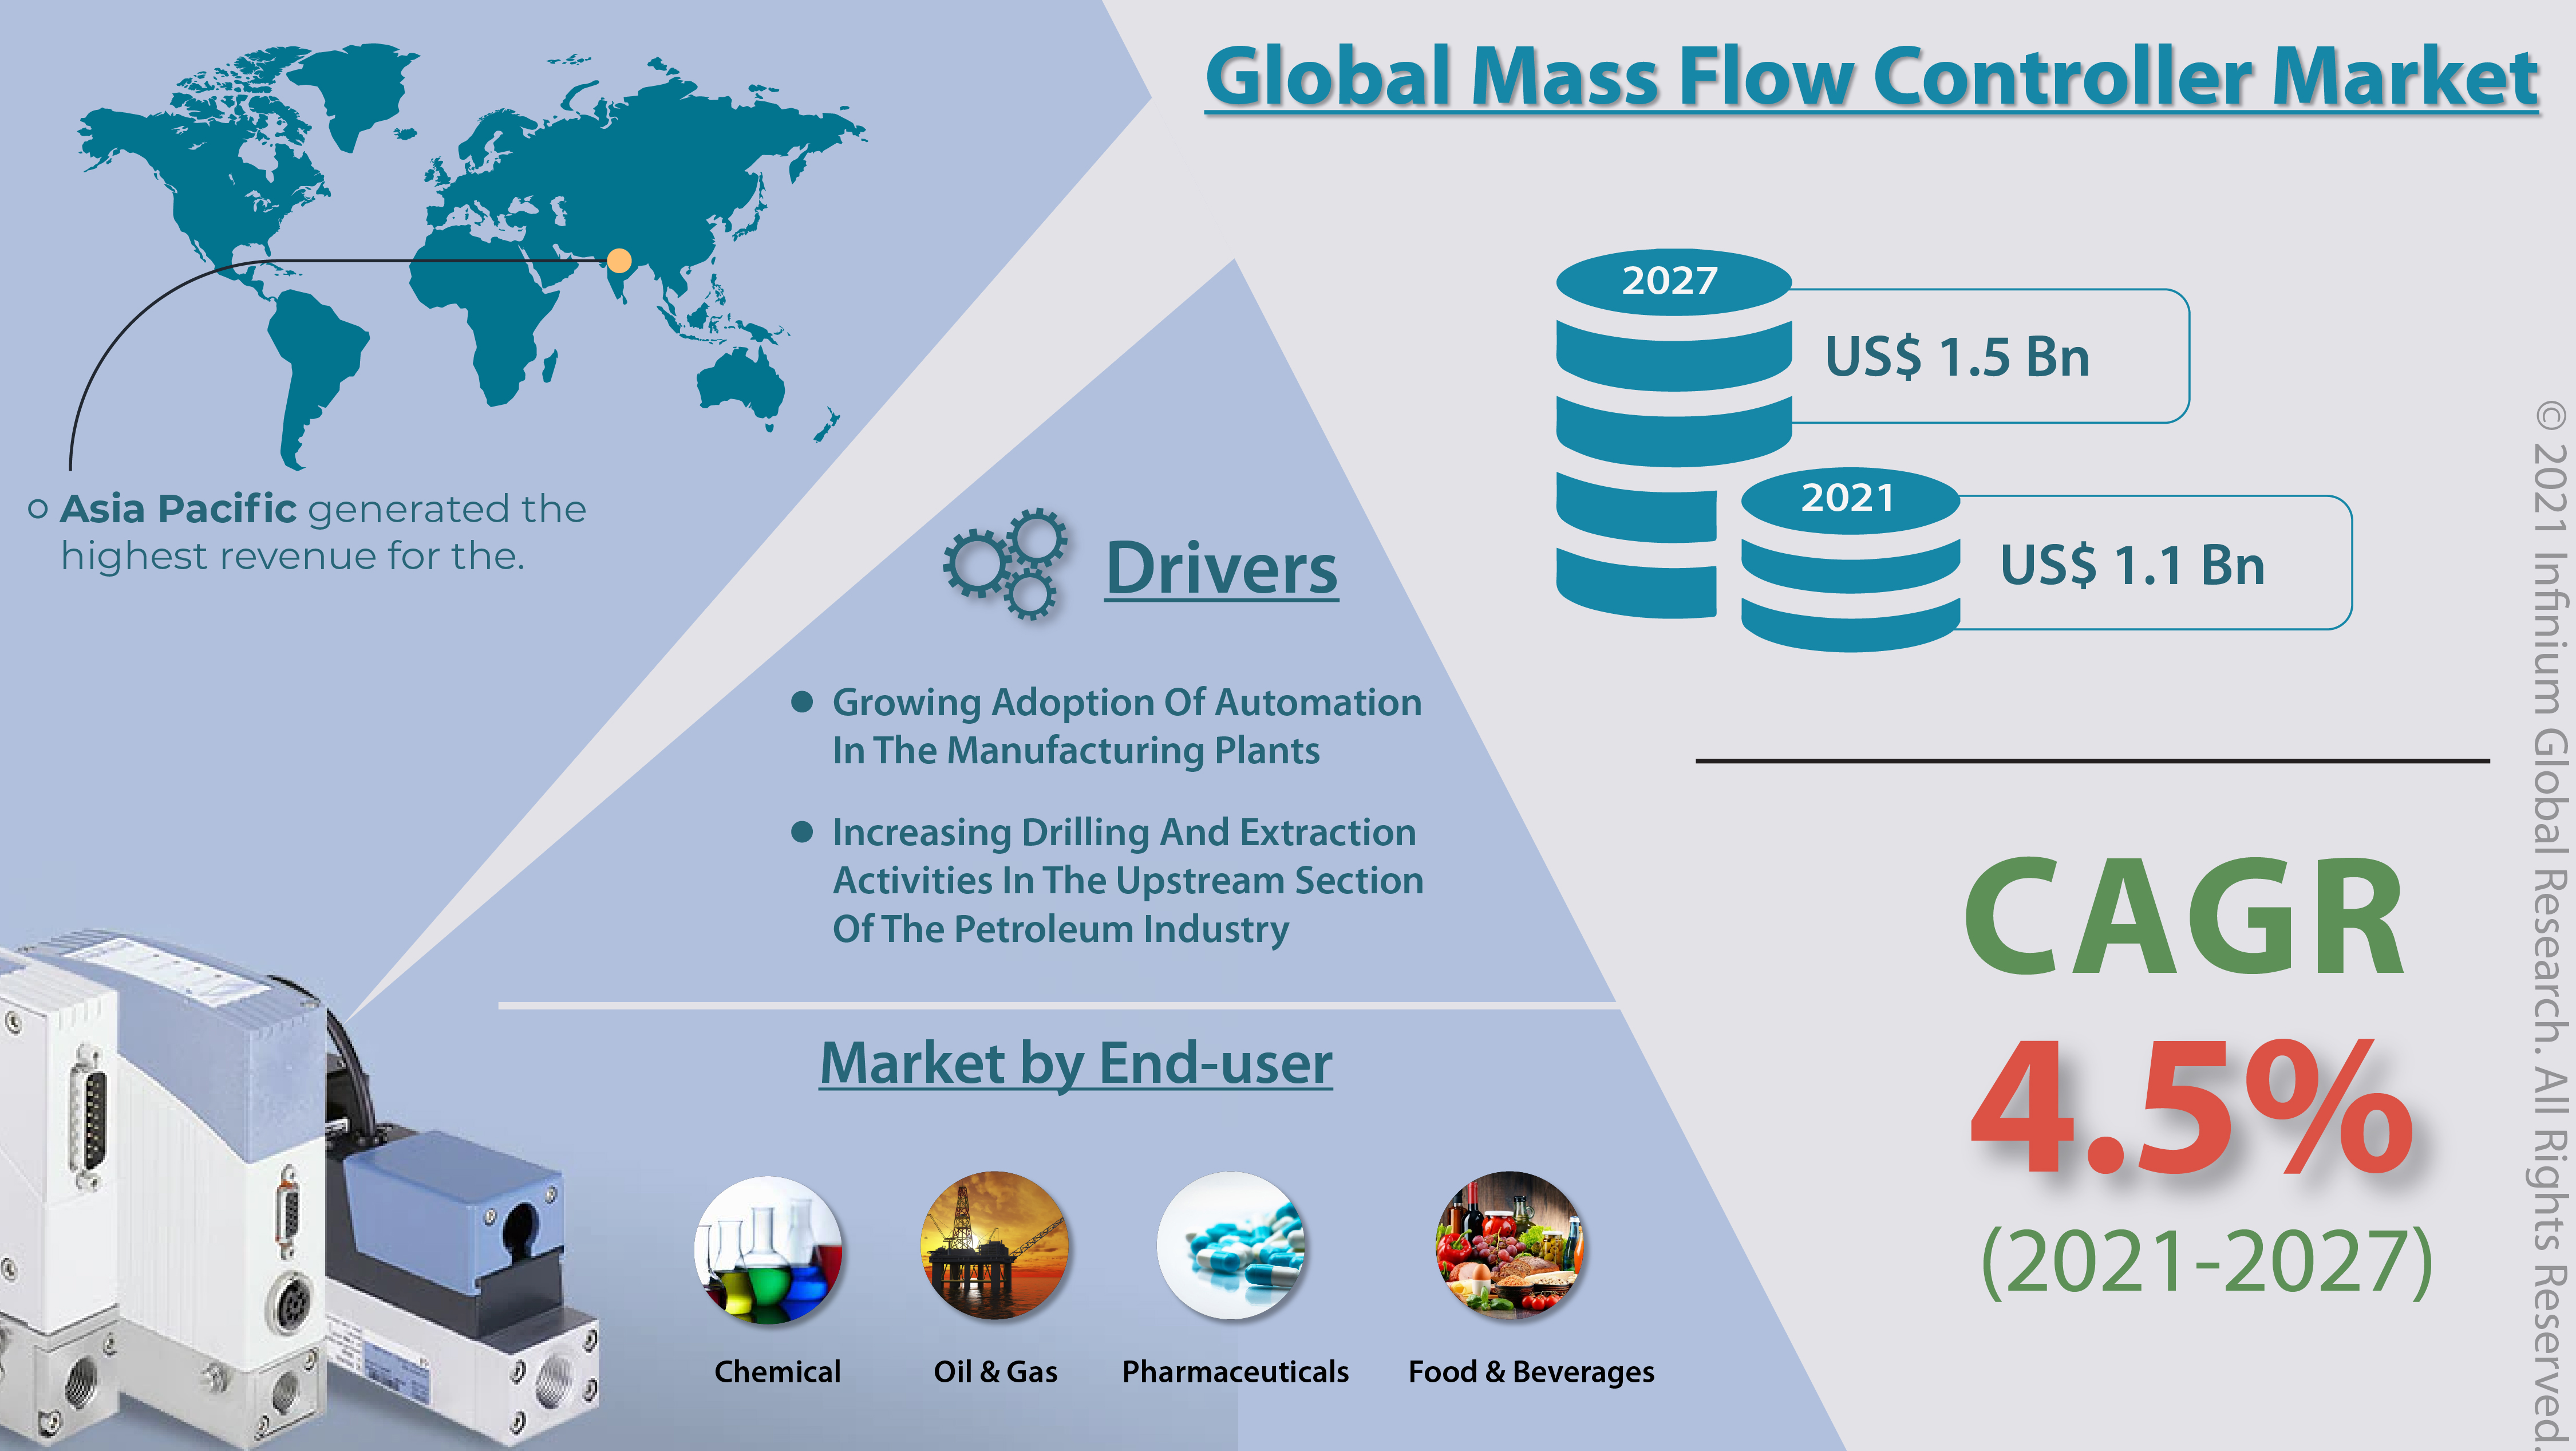 Mass Flow Controller Market